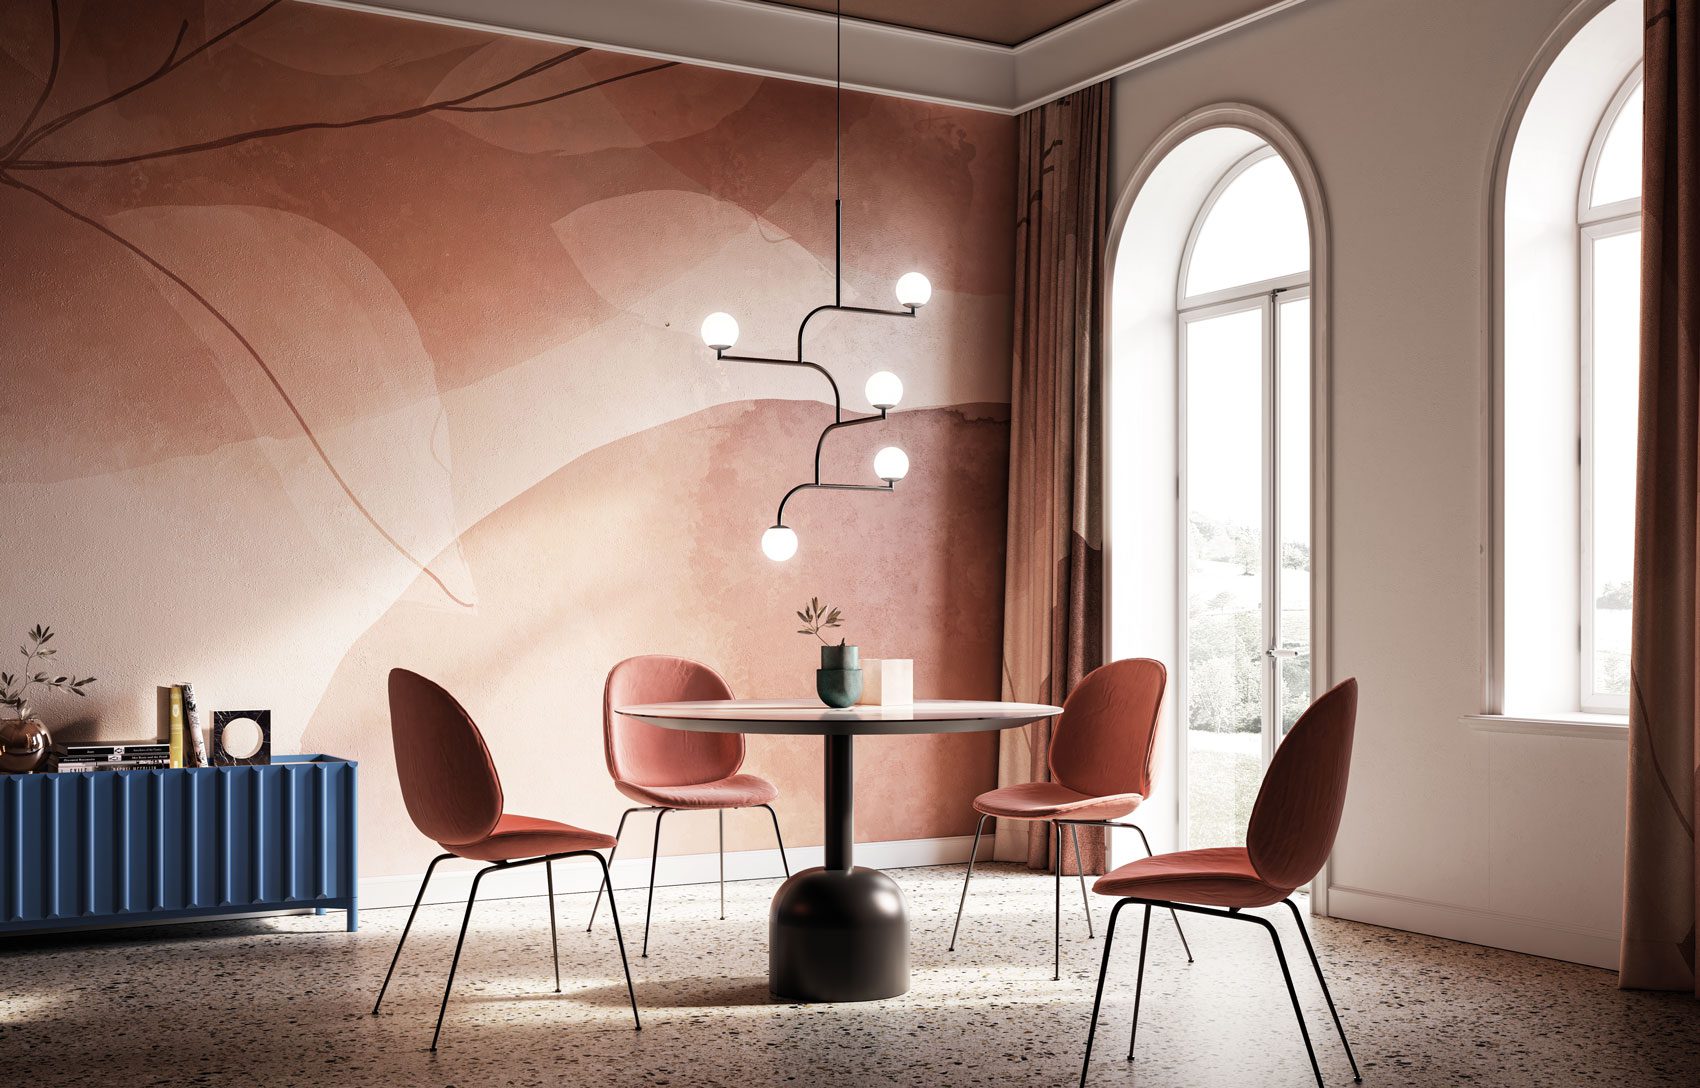 La Papier Peint de Luxe d'Instabilelab décore et aménage les espaces avec style, élégance et raffinement. Découvrez notre collection.